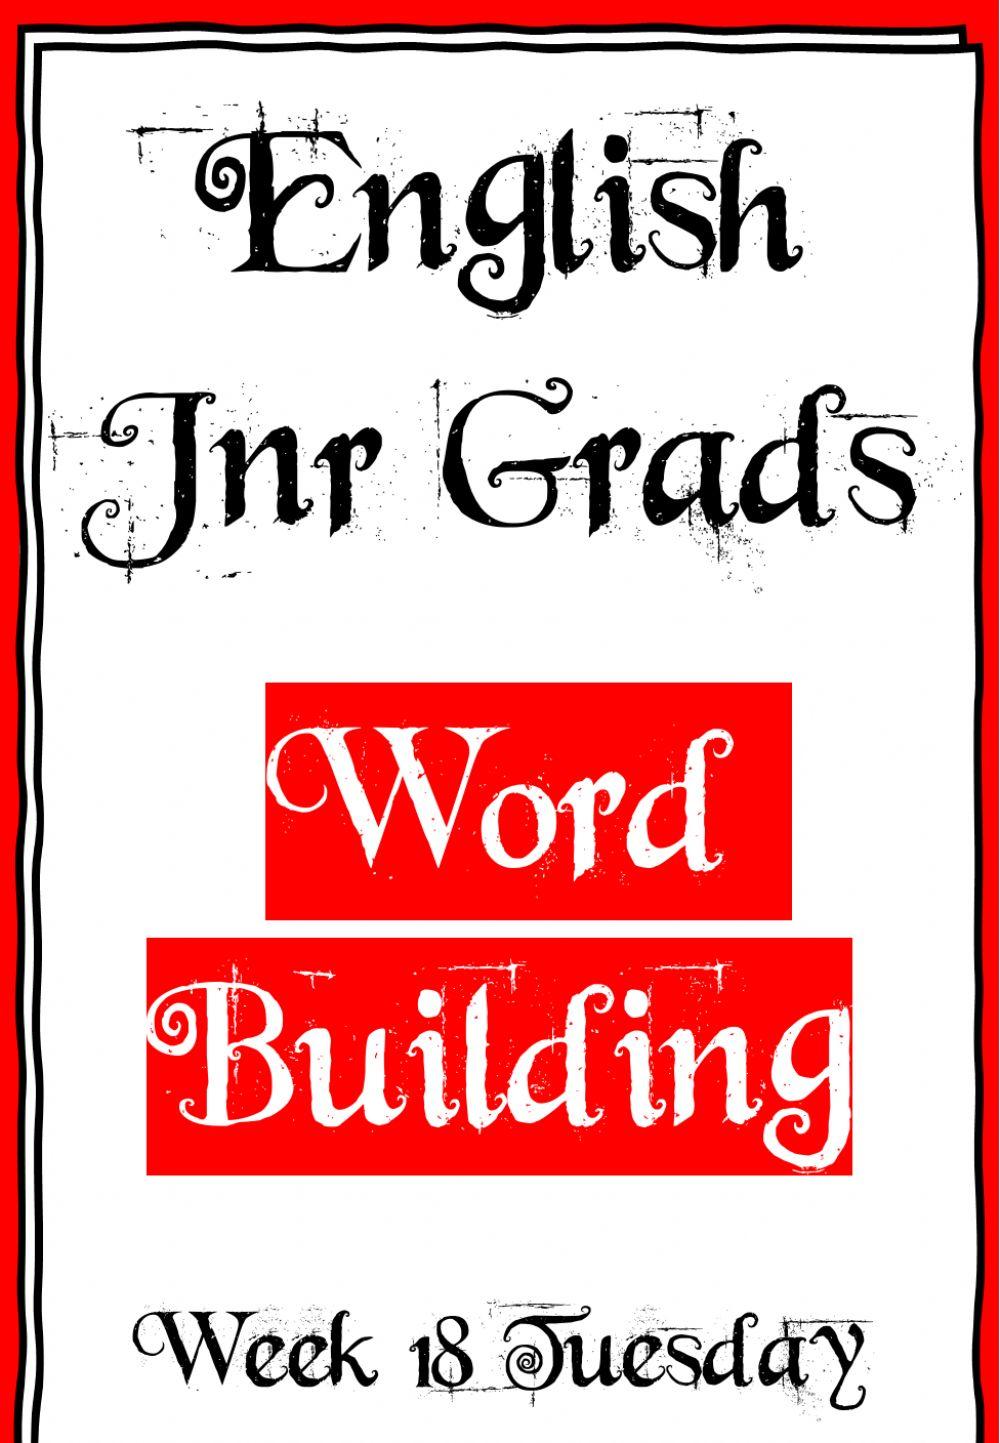 Week 18 - Tuesday - Word building